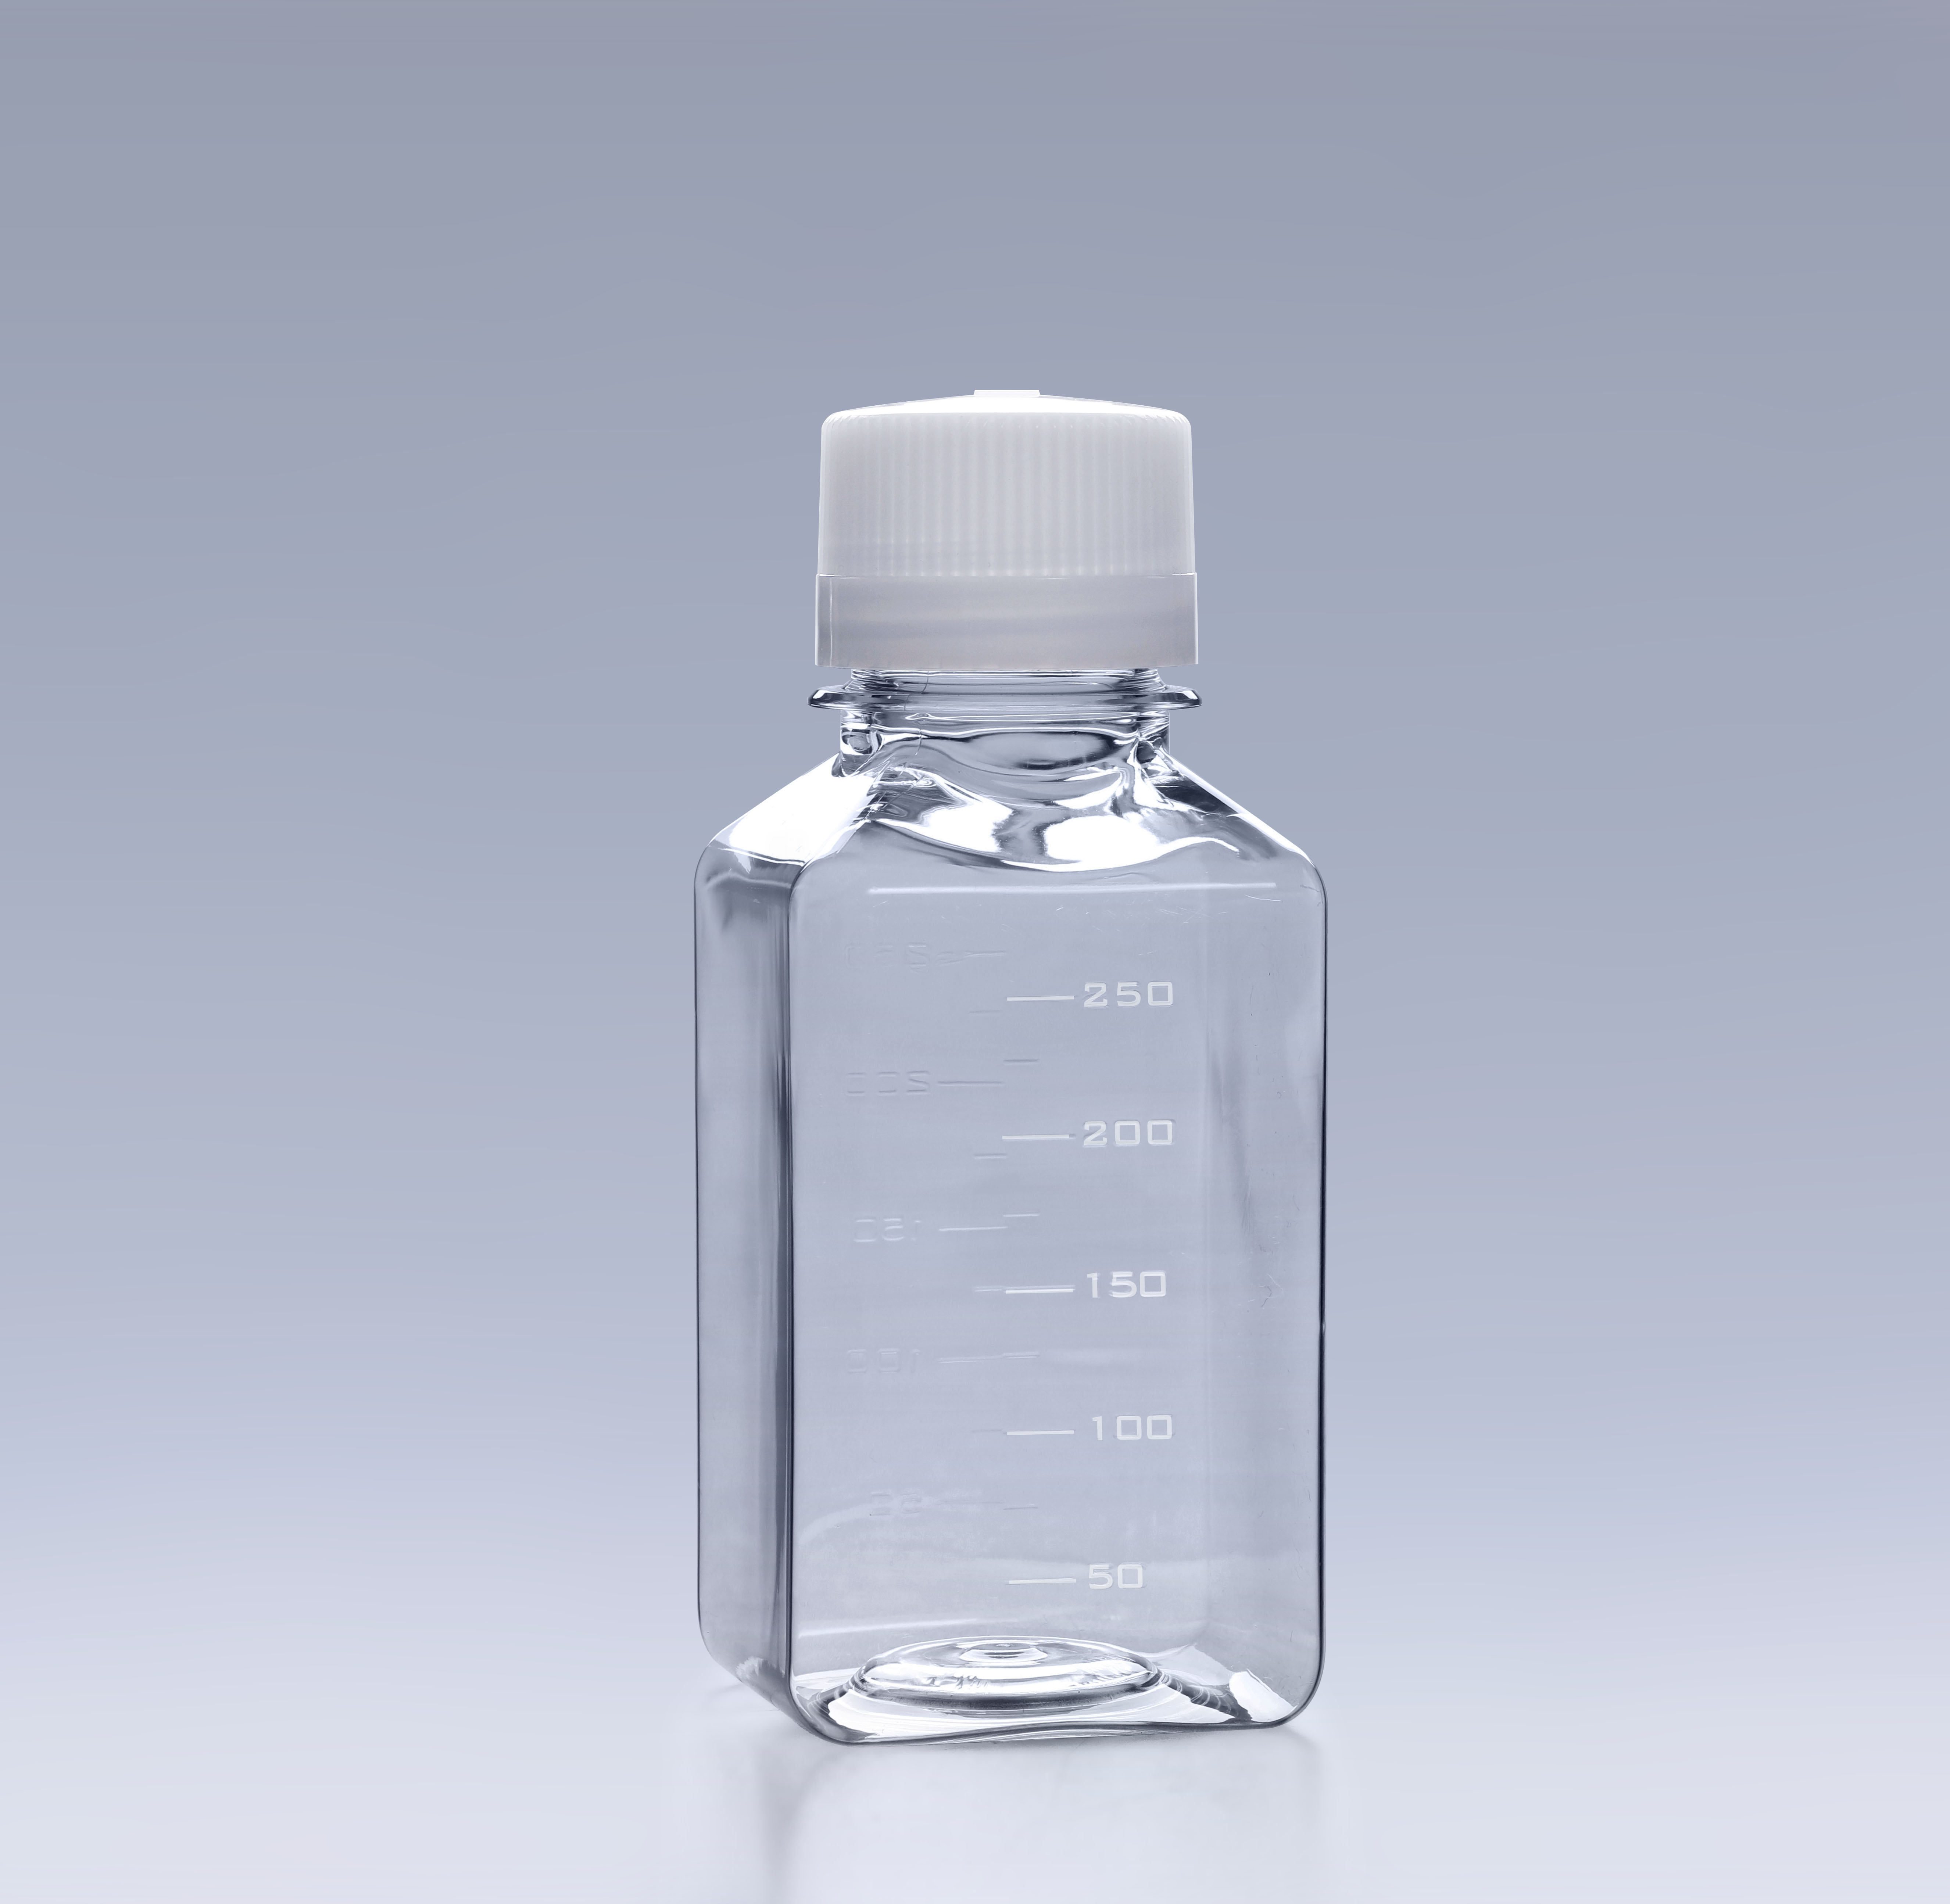 马血清的应用及PETG培养基瓶的特点